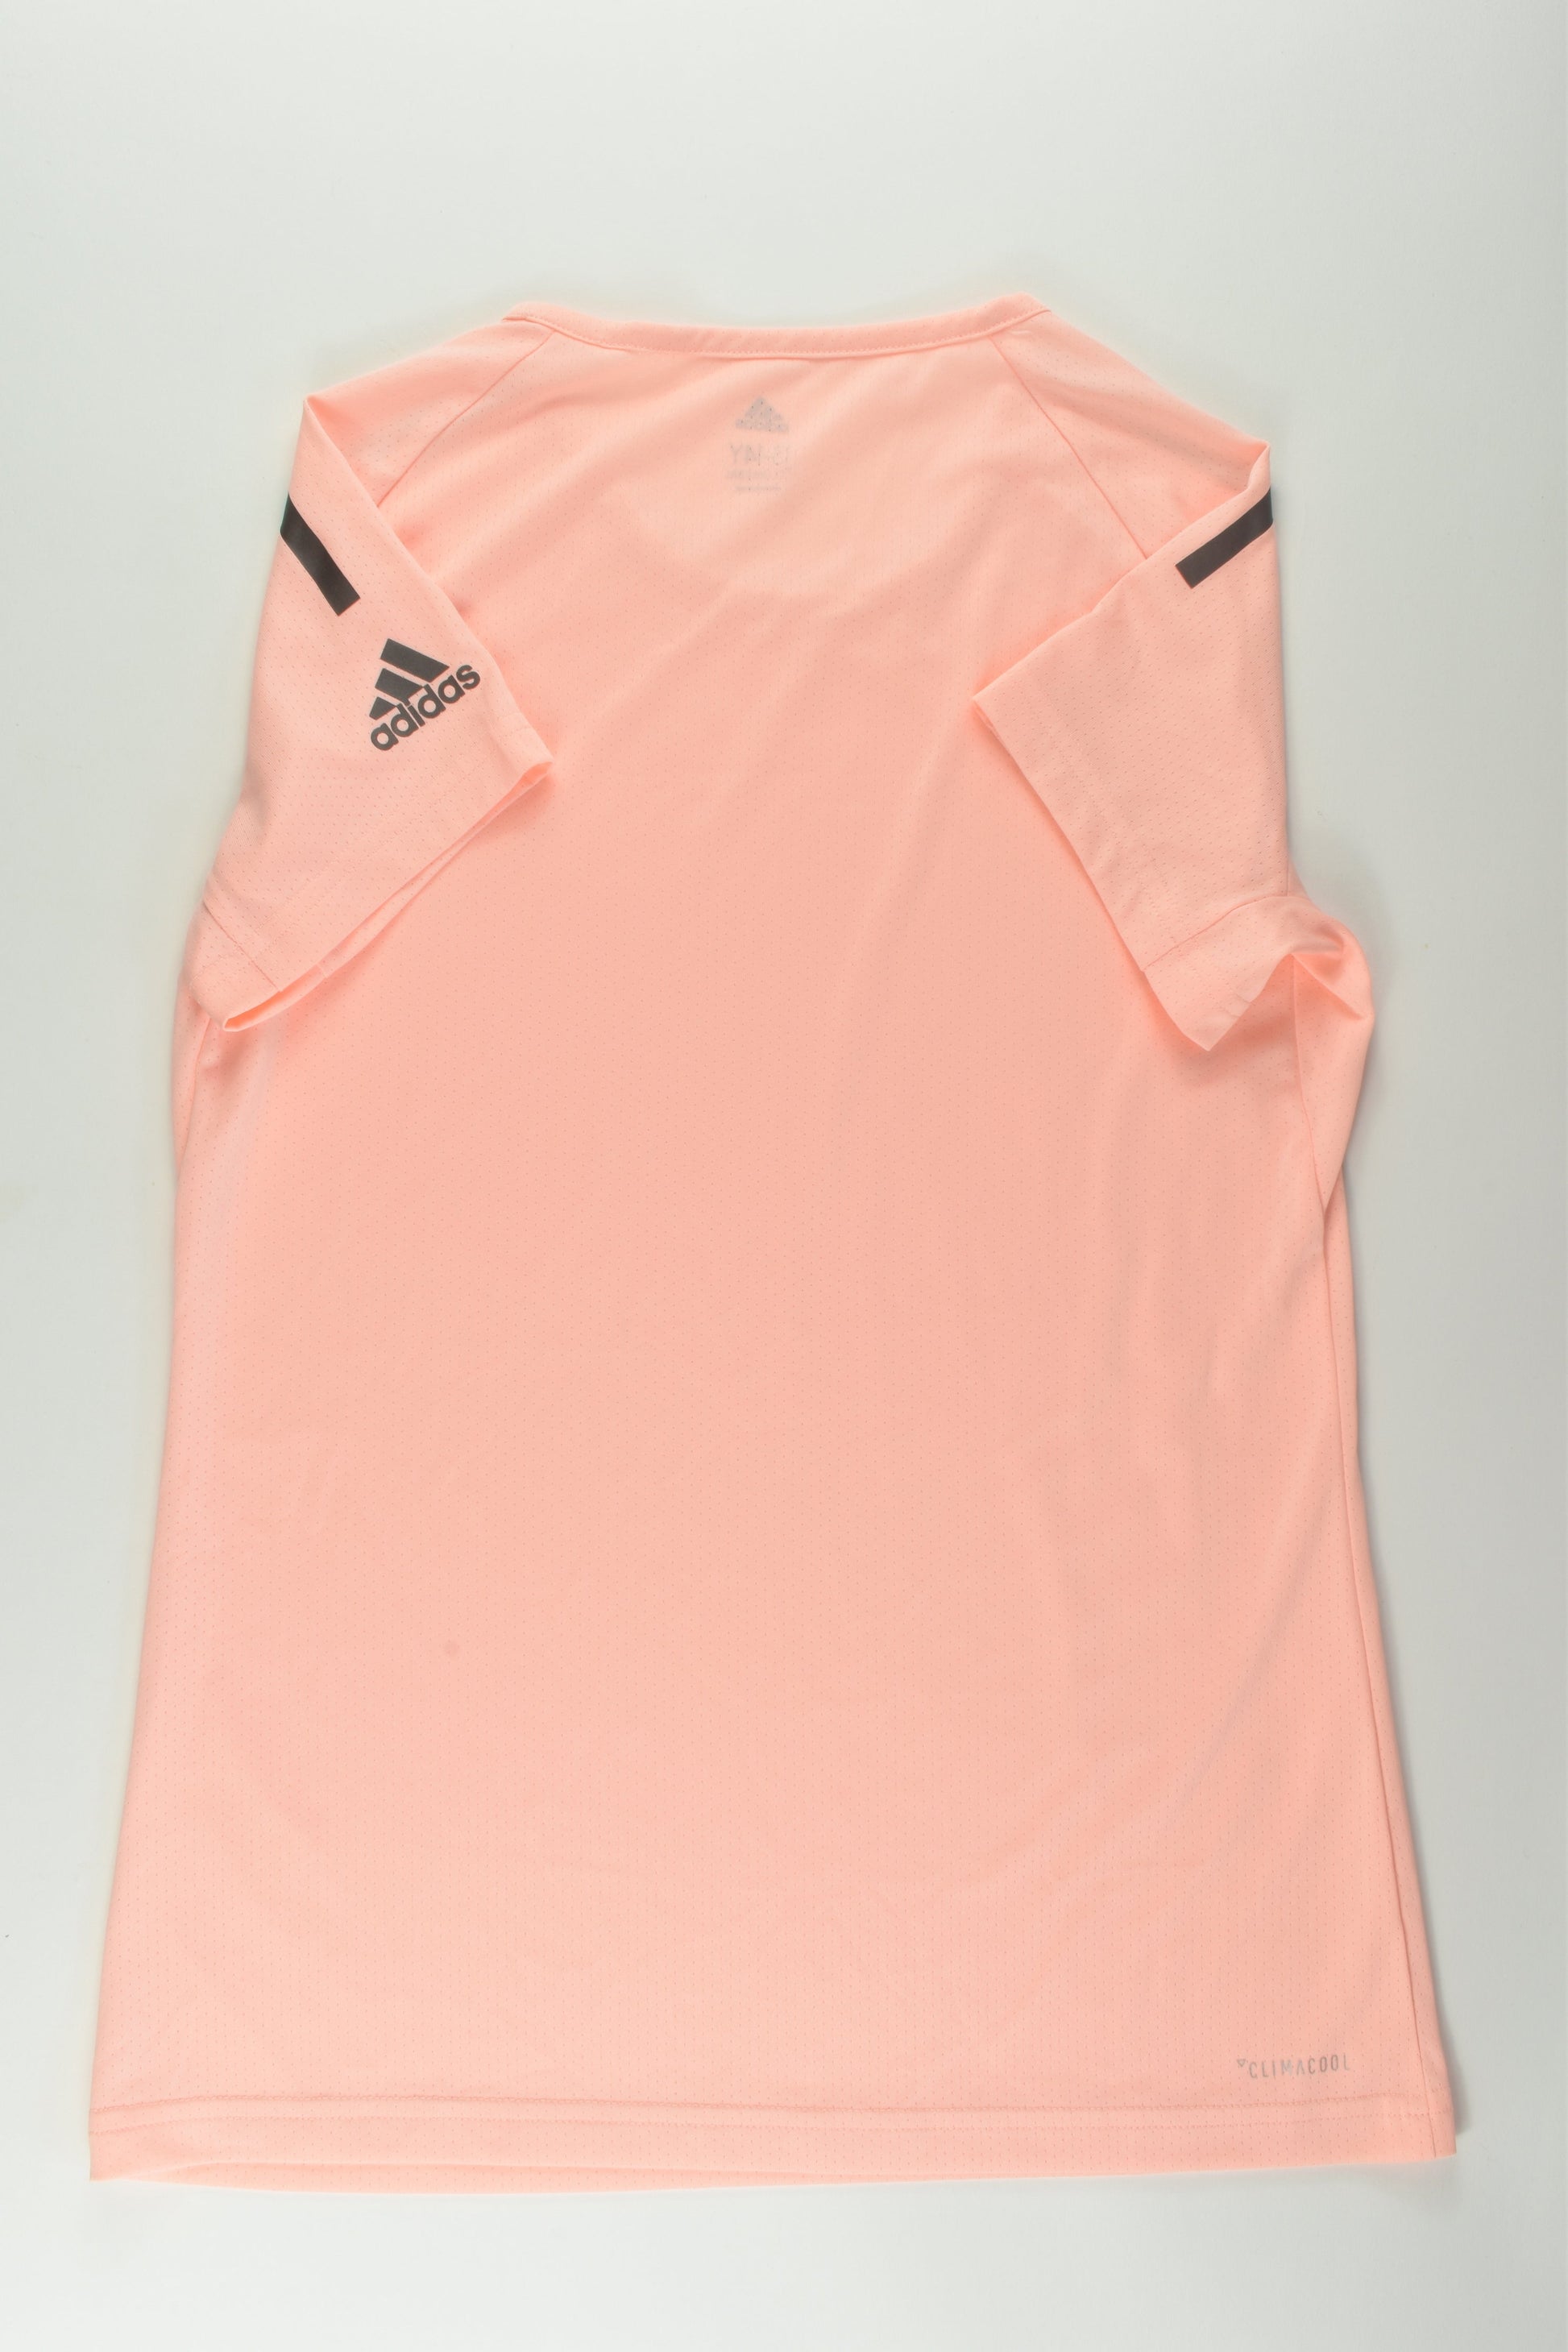 Adidas Size 13-14 Climalite T-shirt